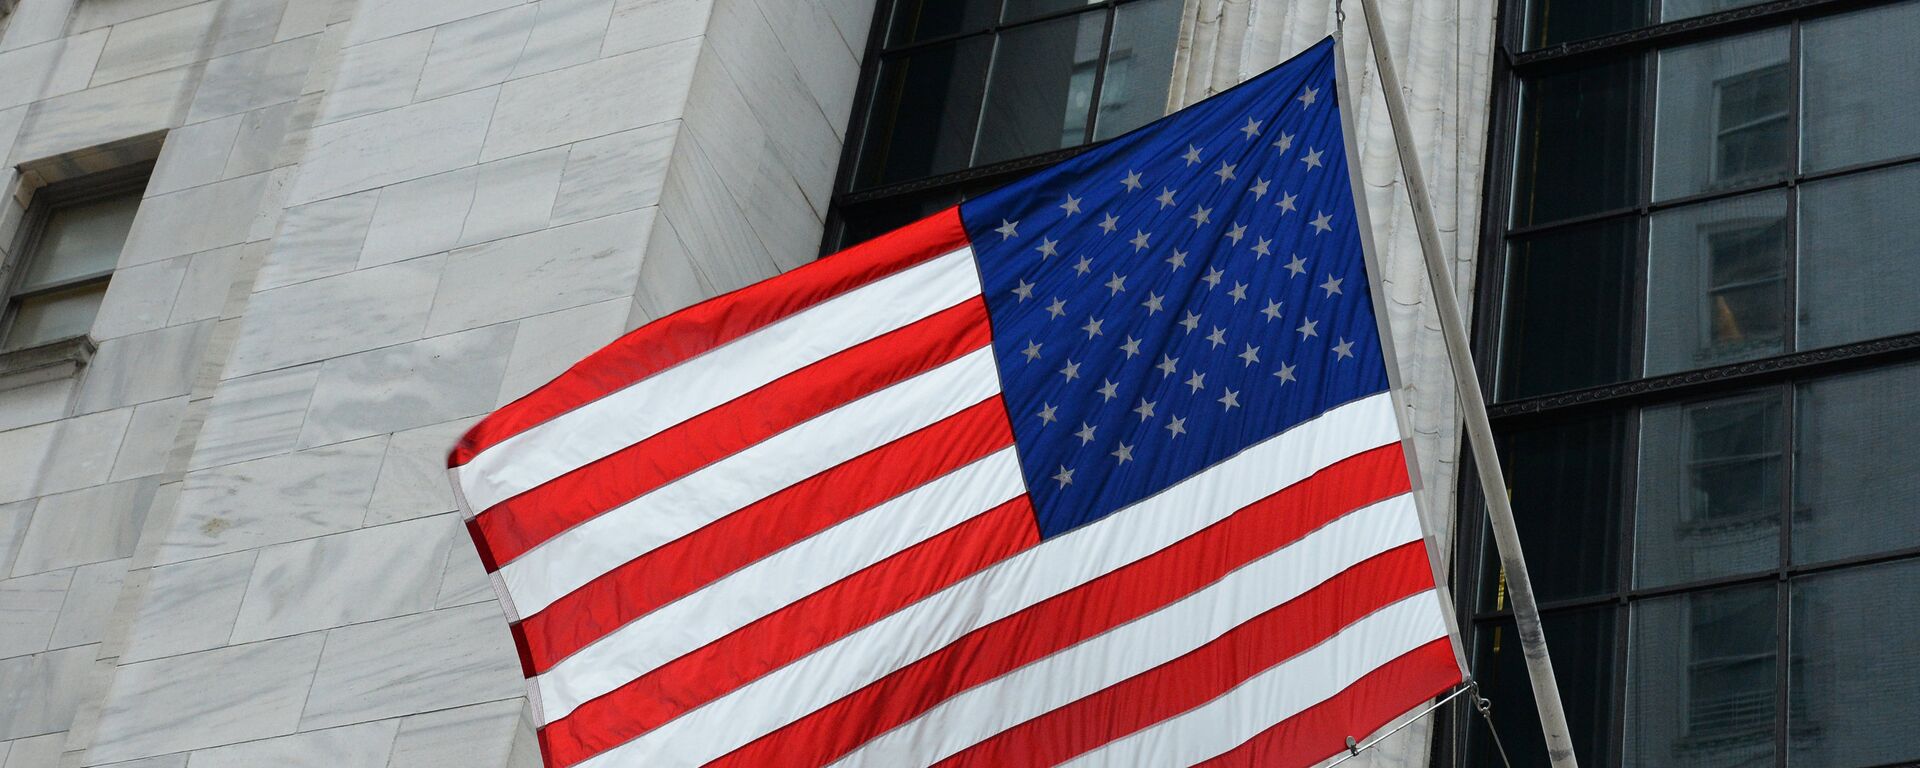 Флаг США на здании Нью-йоркской фондовой биржи на Уолл-стрит. - Sputnik Грузия, 1920, 26.01.2022